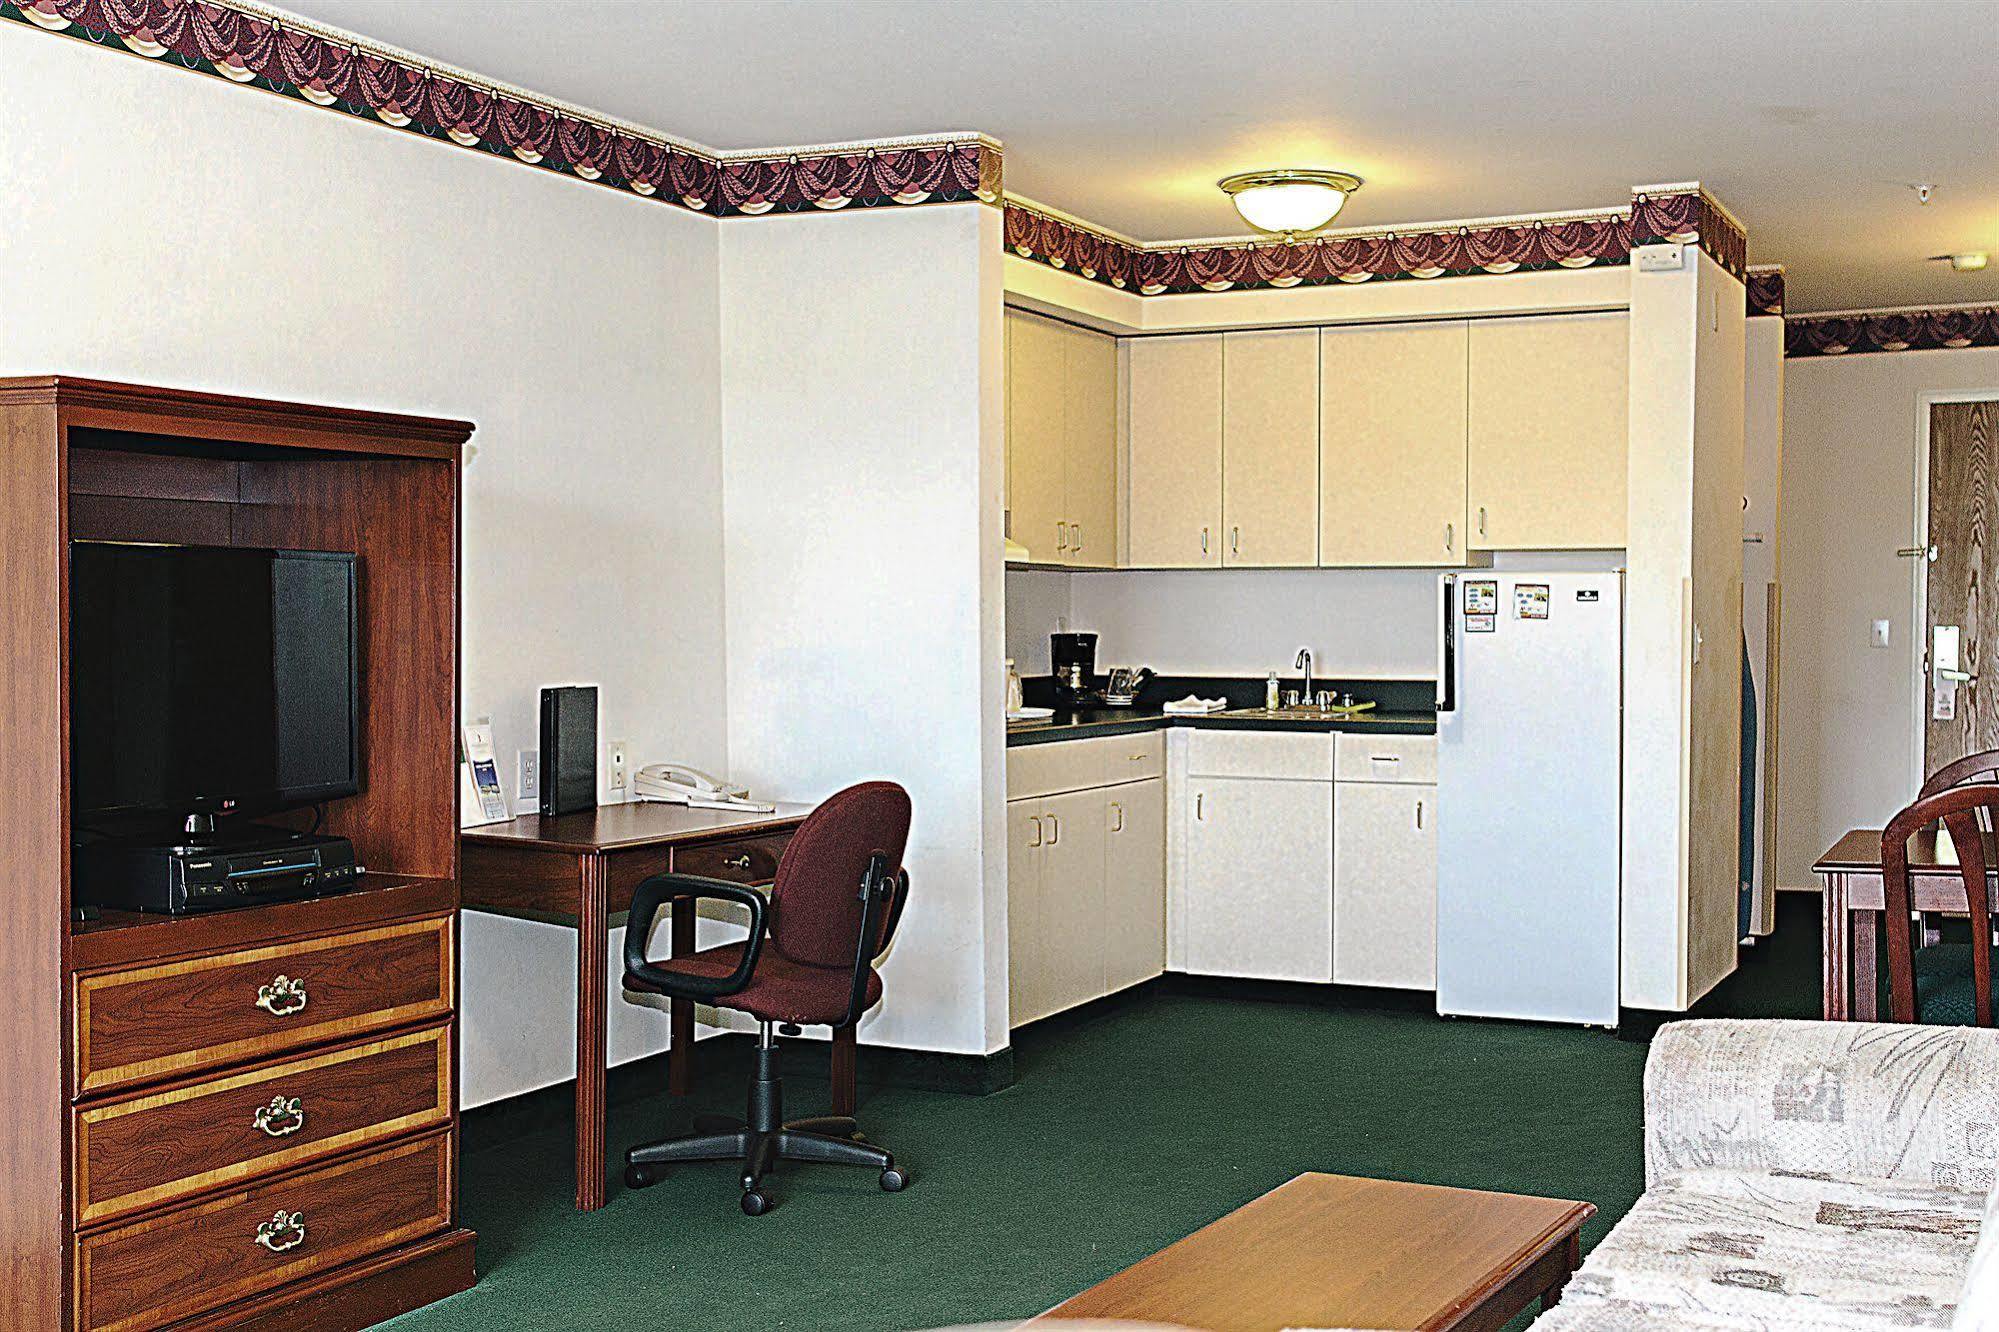 FairBridge Inn&Suites DuPont Exterior foto